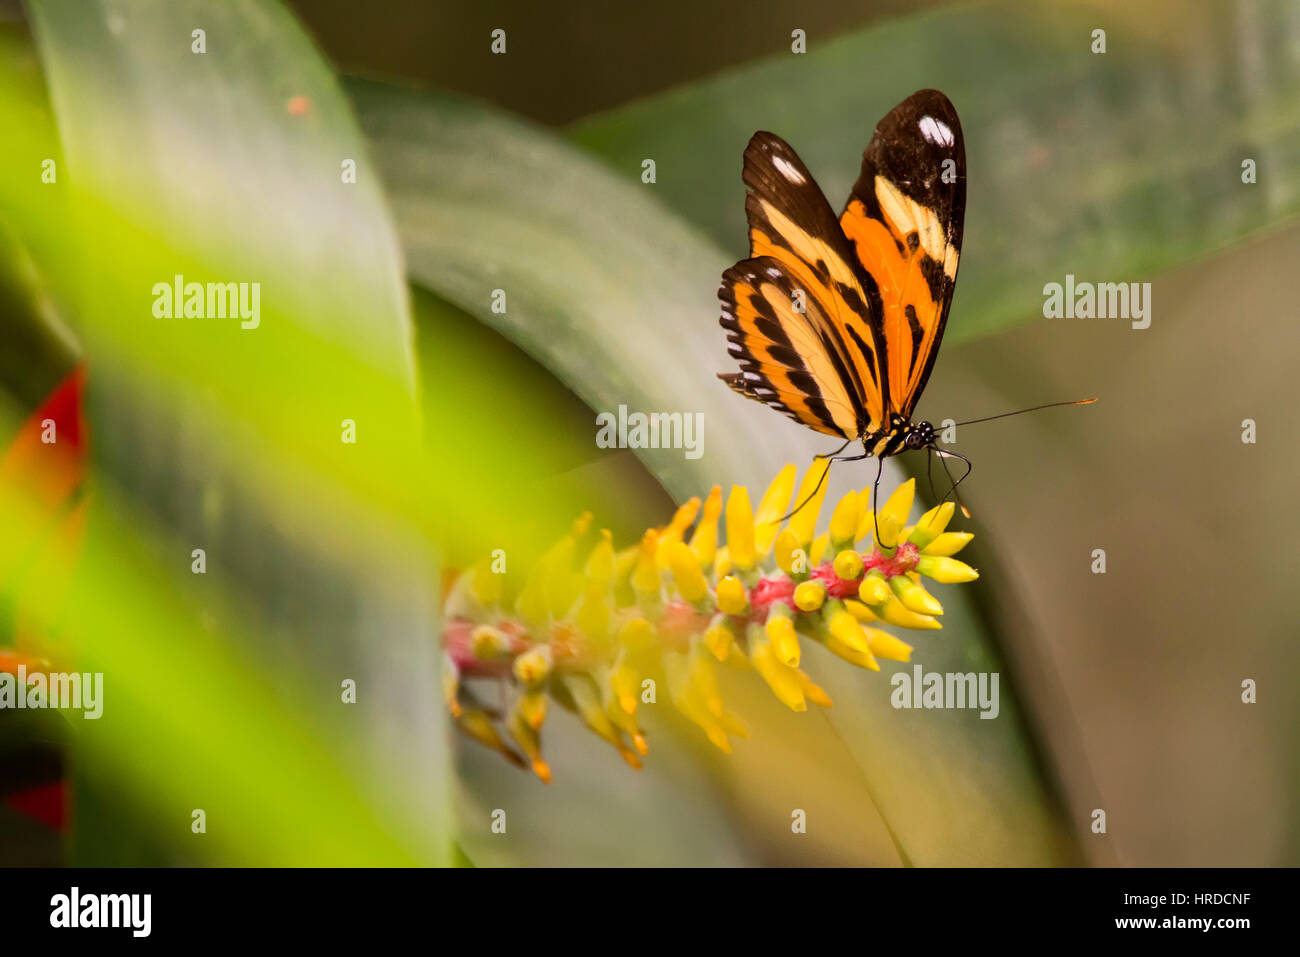 Les terres de papillon sur fleur, photographié à Domingos Martins, Espírito Santo - Brésil. Biome de la forêt atlantique. Animal sauvage. Banque D'Images